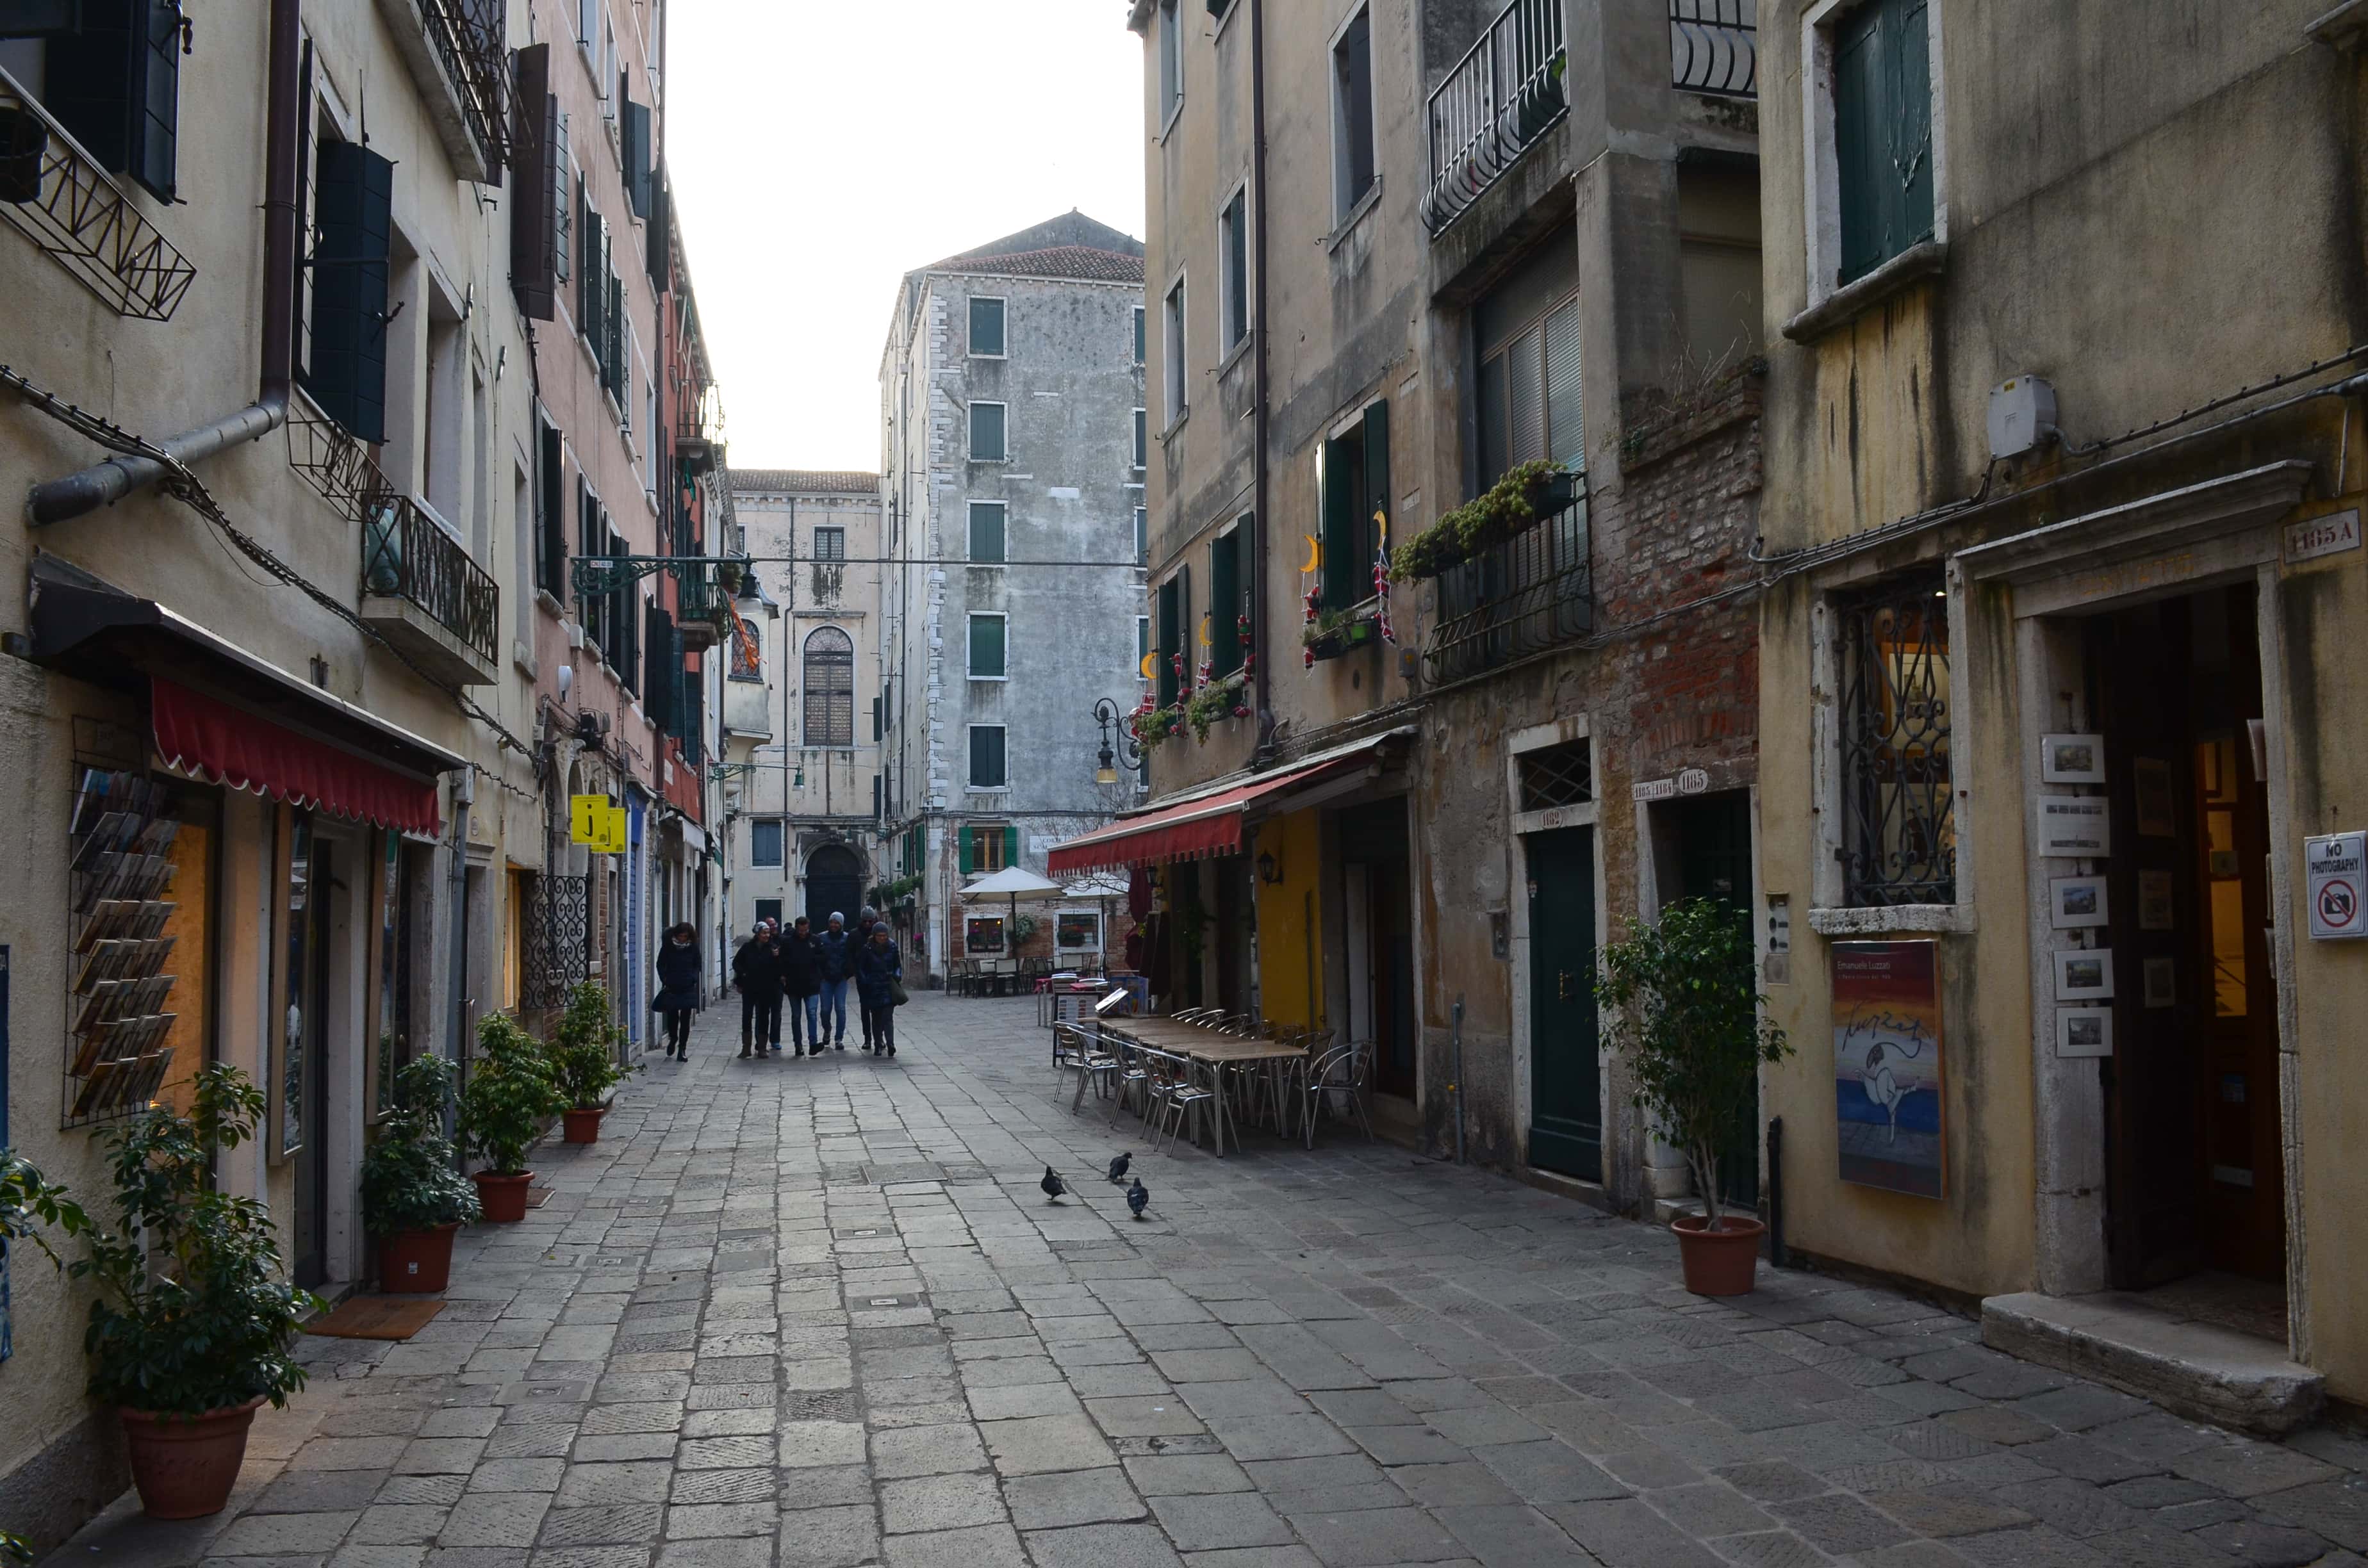 Ghetto Vecchio in Venice, Italy